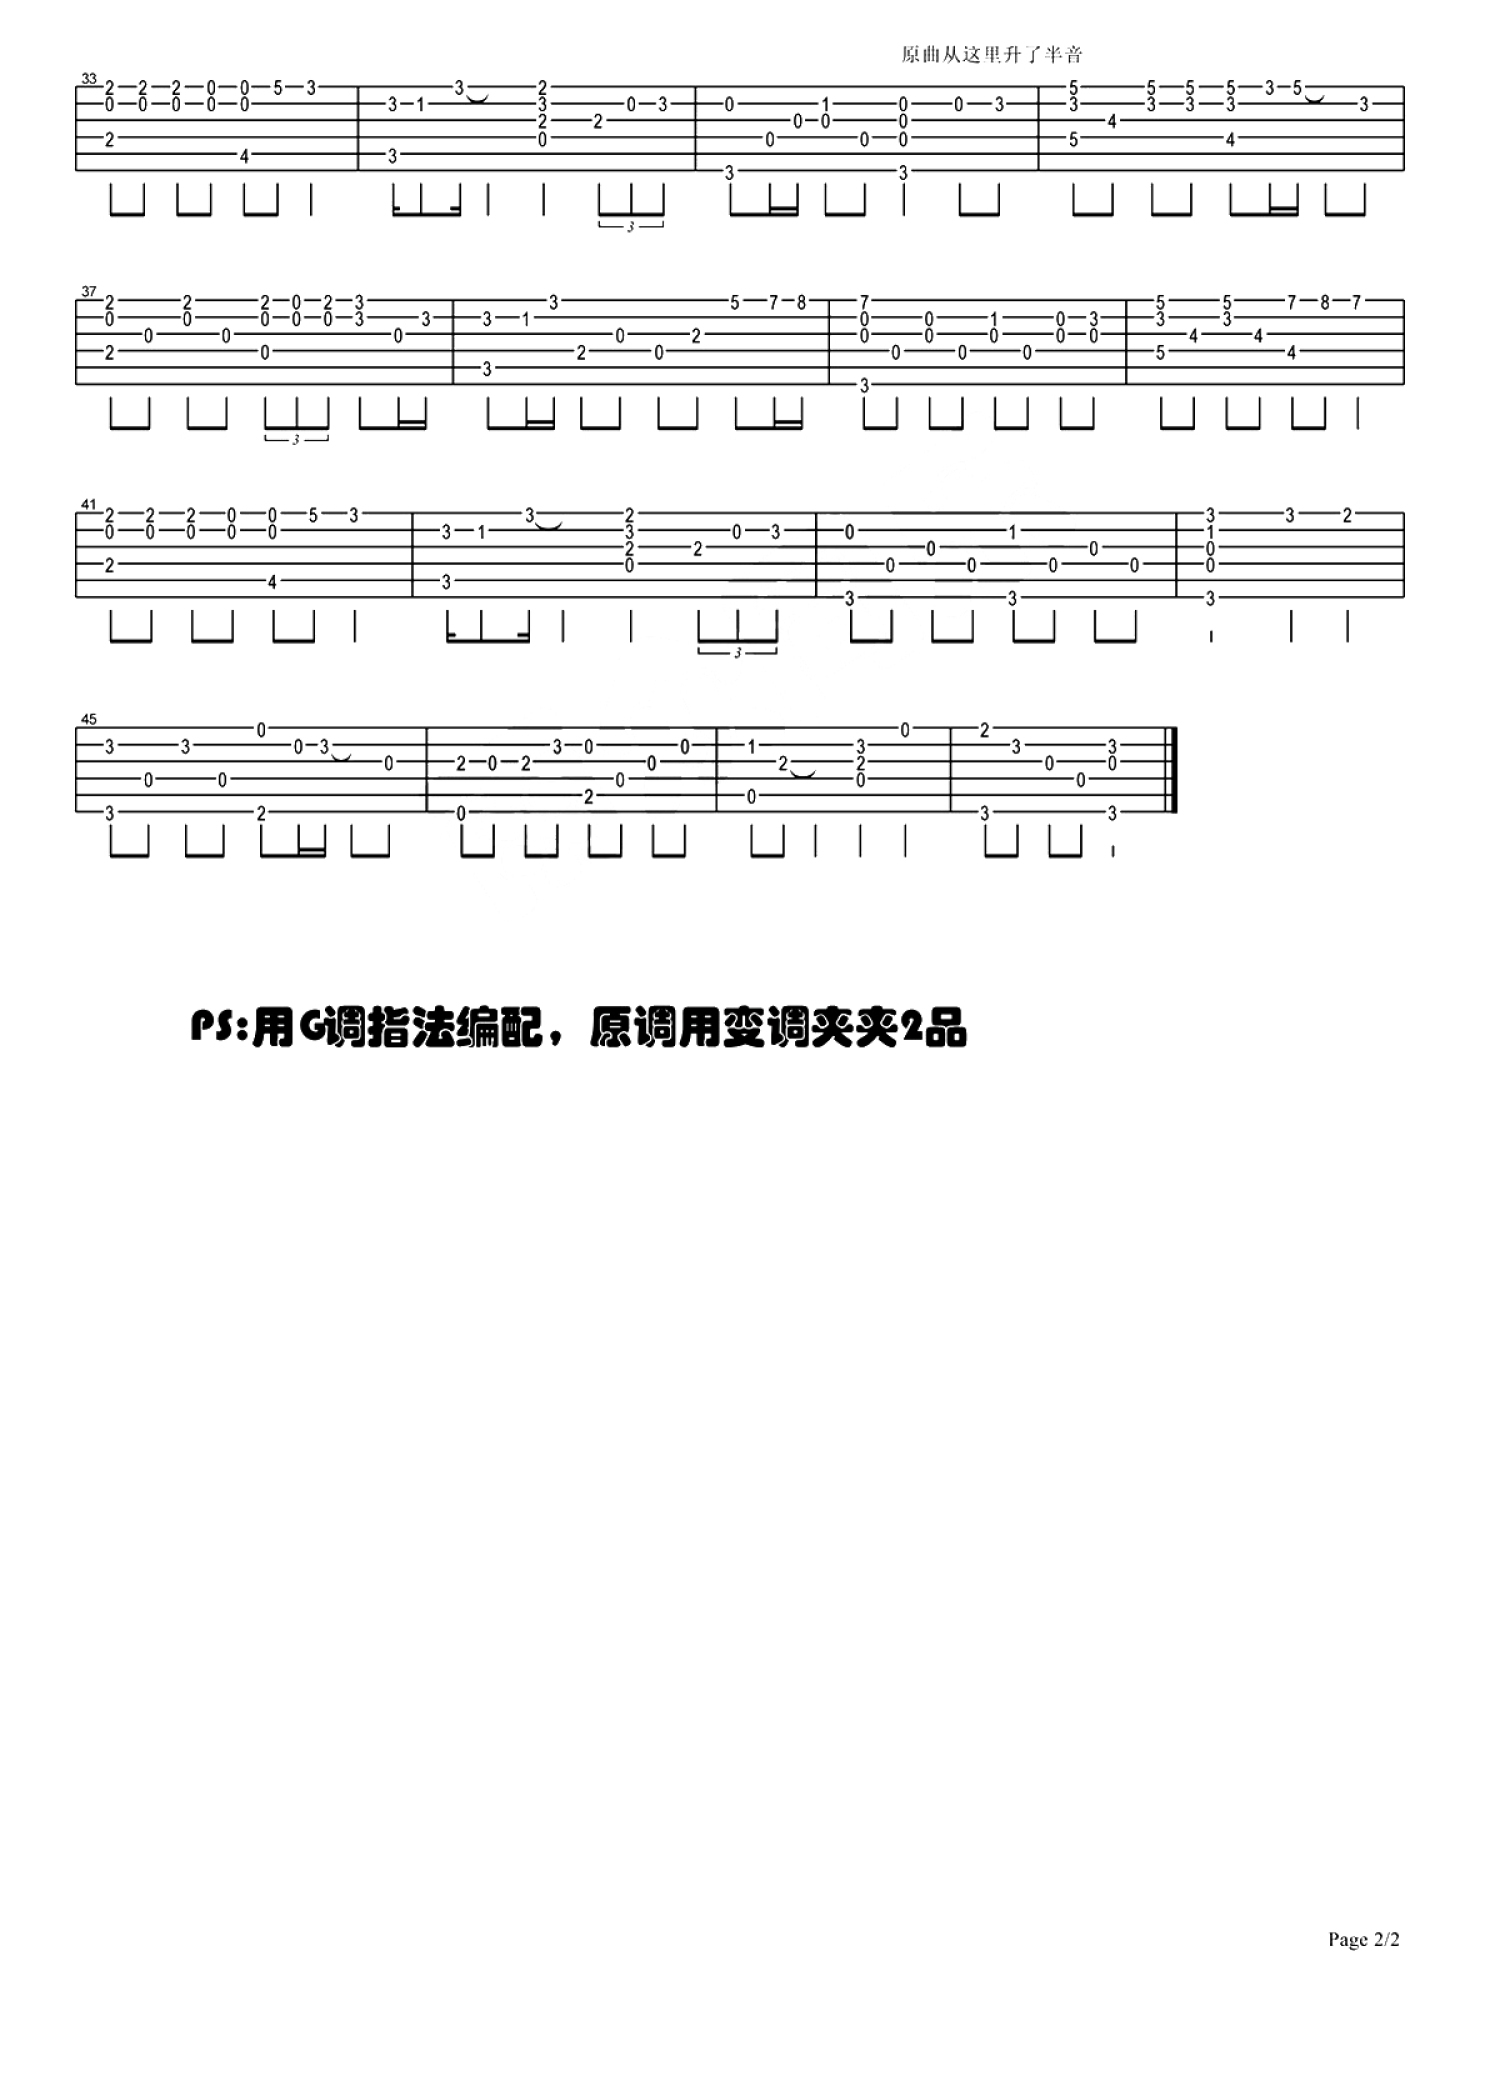 叶炫清《从前慢》吉他谱-虫虫吉他:www.ccguitar.cn